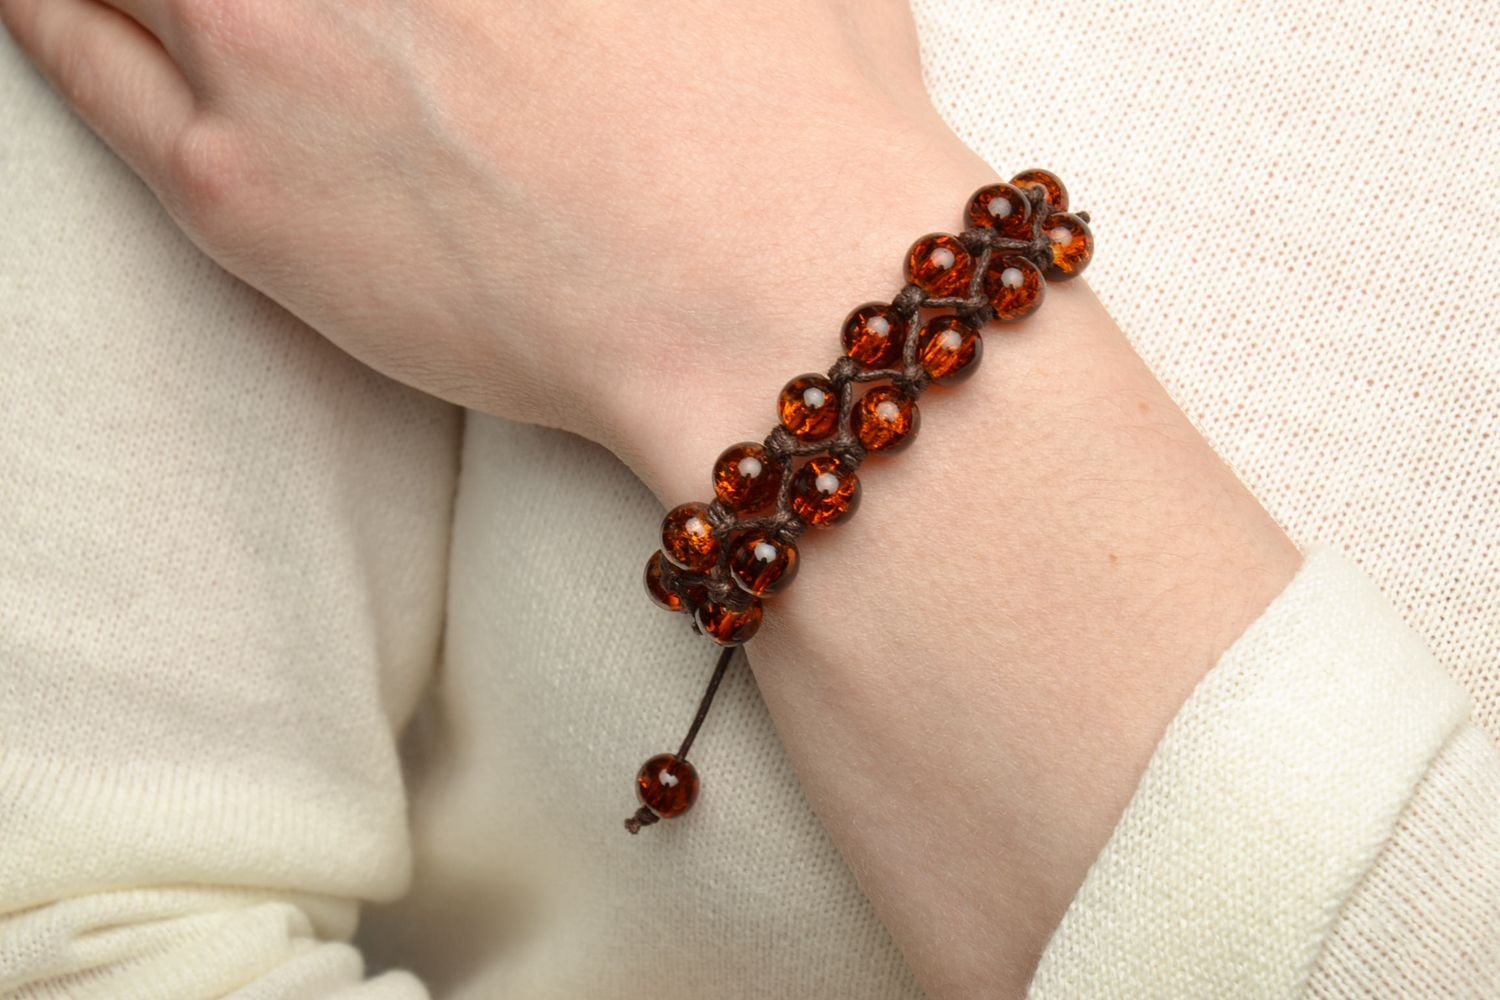 Wrist bracelet made of amber-like beads photo 5